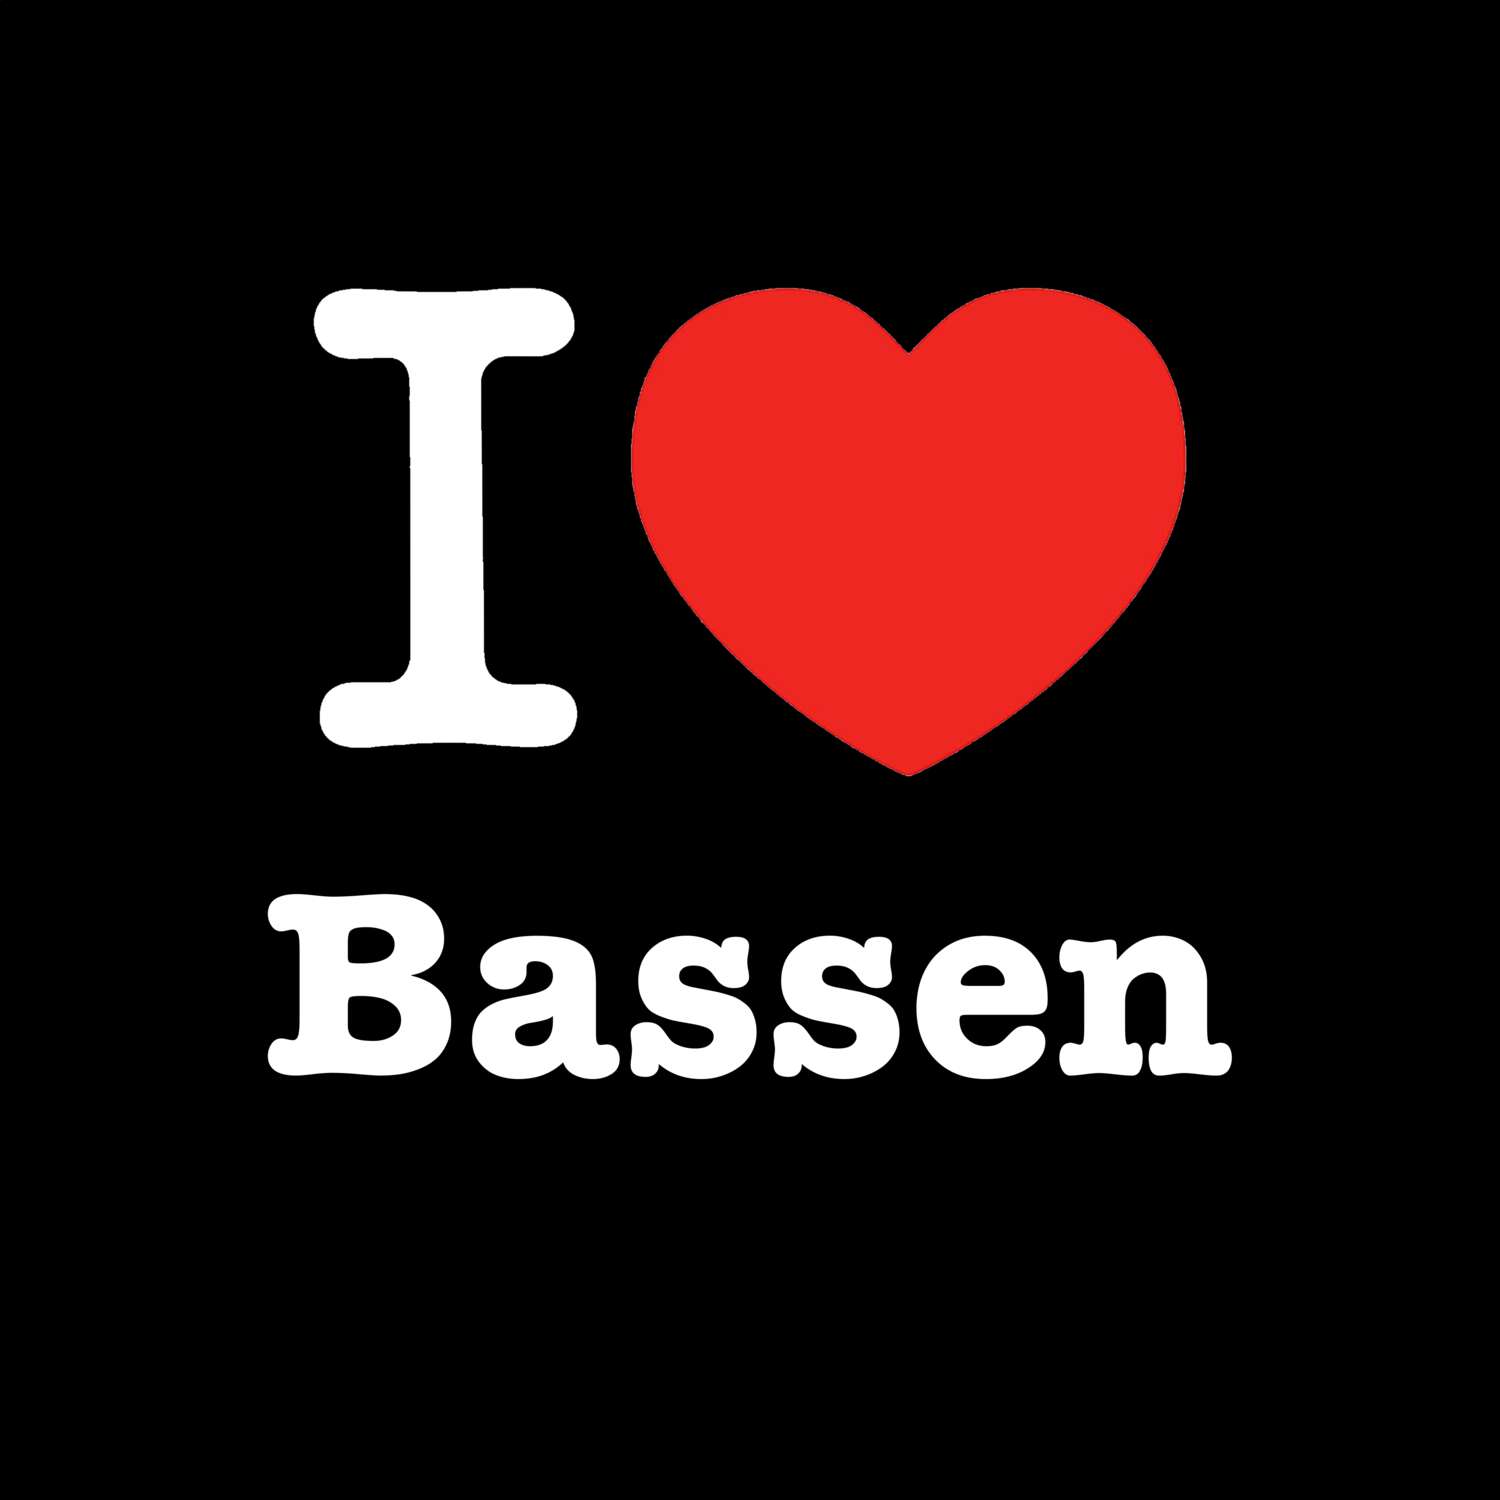 Bassen T-Shirt »I love«